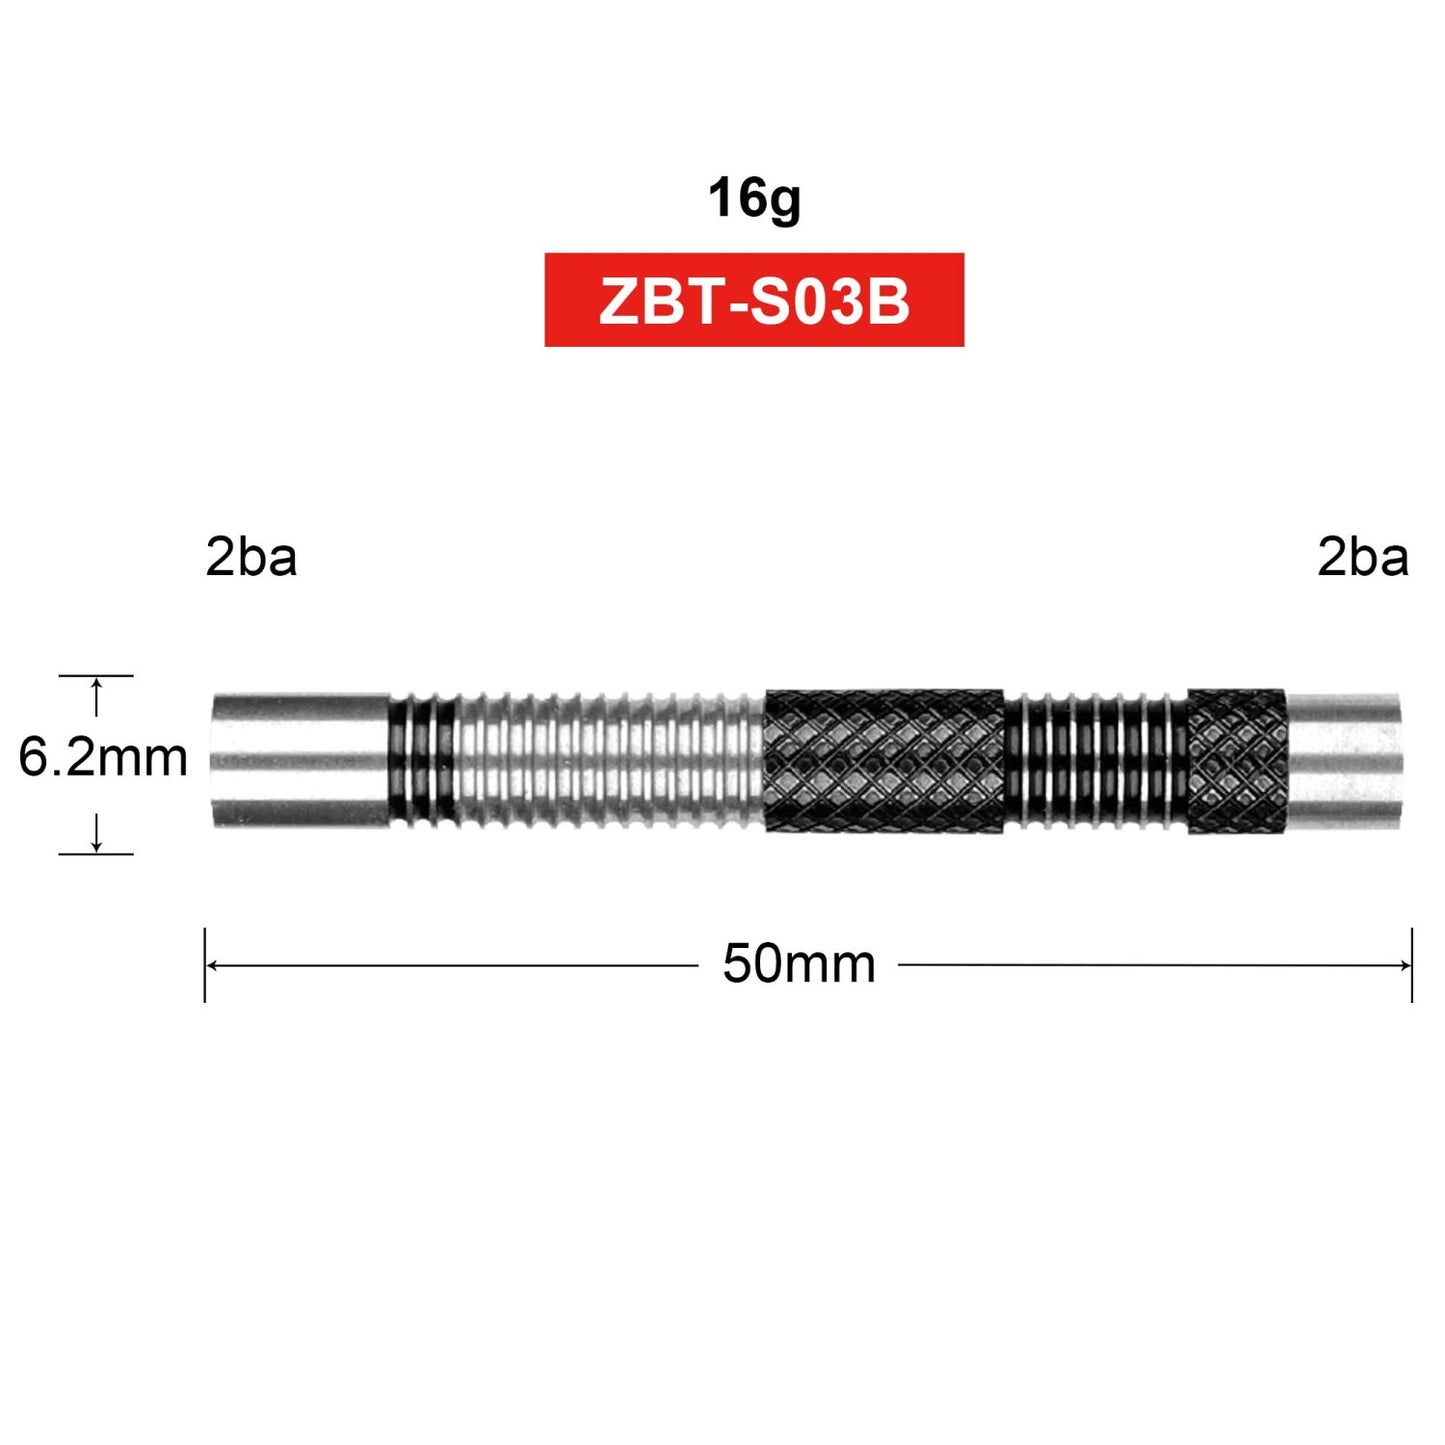 ZG03 style spirale 3 pièces 90% 16g barils de fléchettes à pointe souple en tungstène 2BA et 2BA, sans accessoires